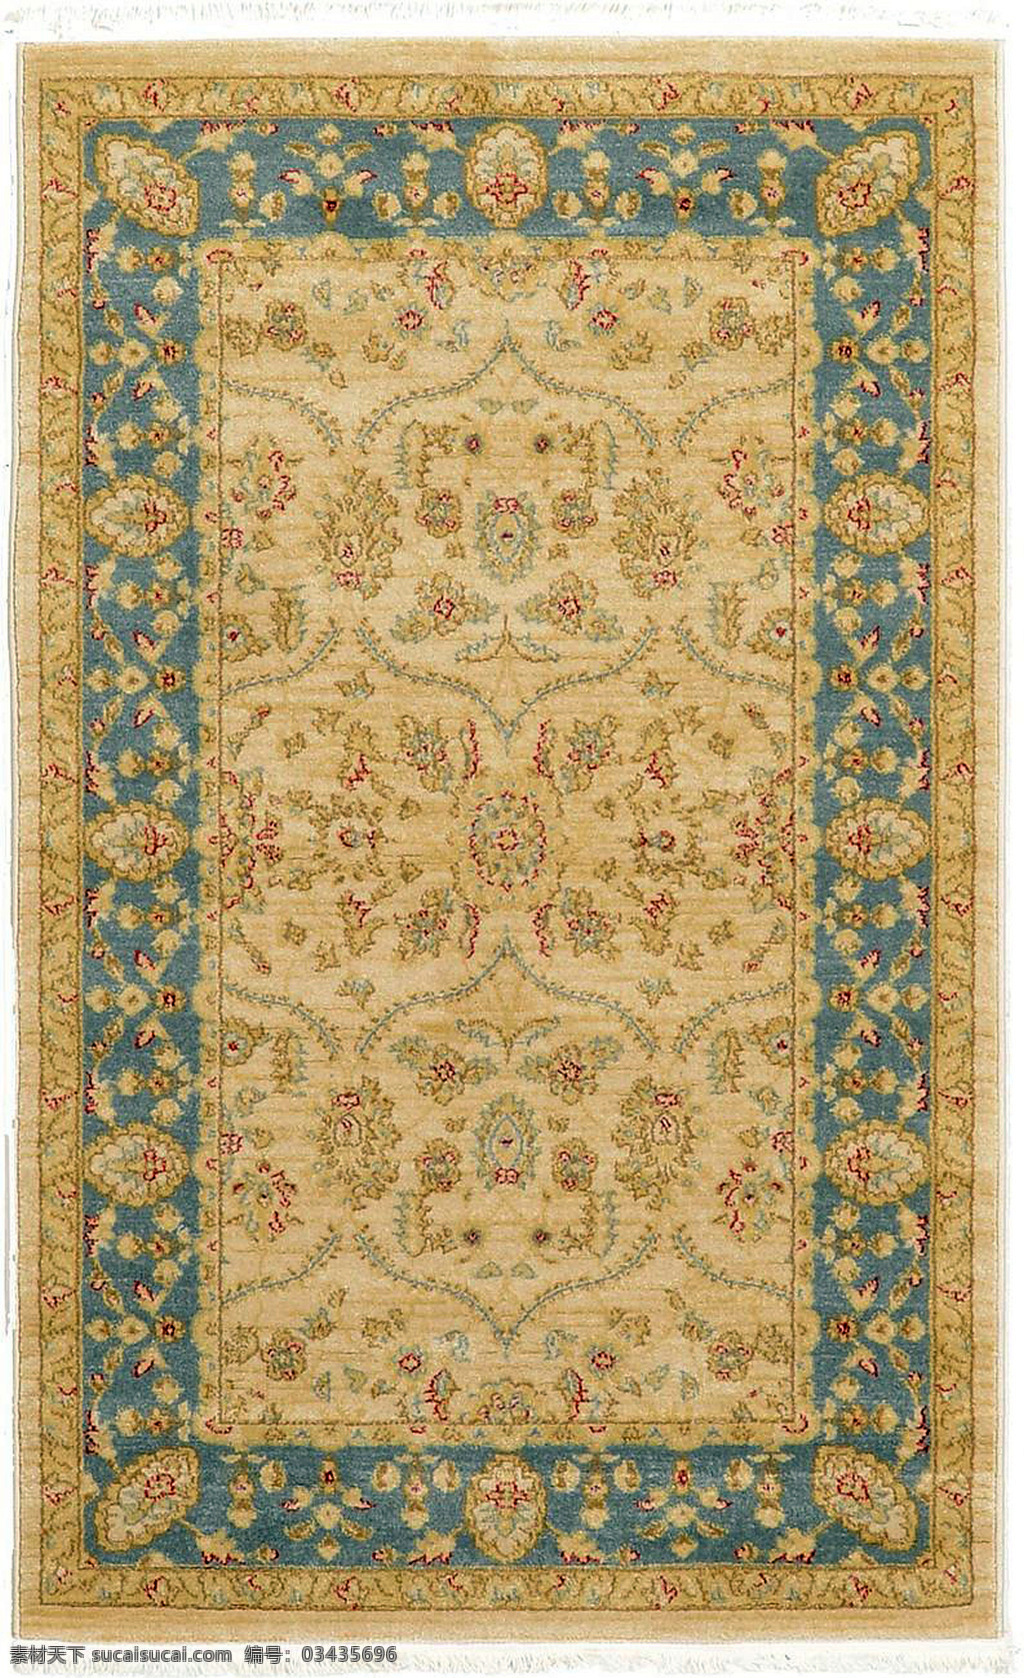 黄 底 蓝 复古 纹理 方形 贴图 地毯 图案贴图 图案 地毯拼图 家庭地毯贴图 家庭式地毯 花边地毯 欧式 风格